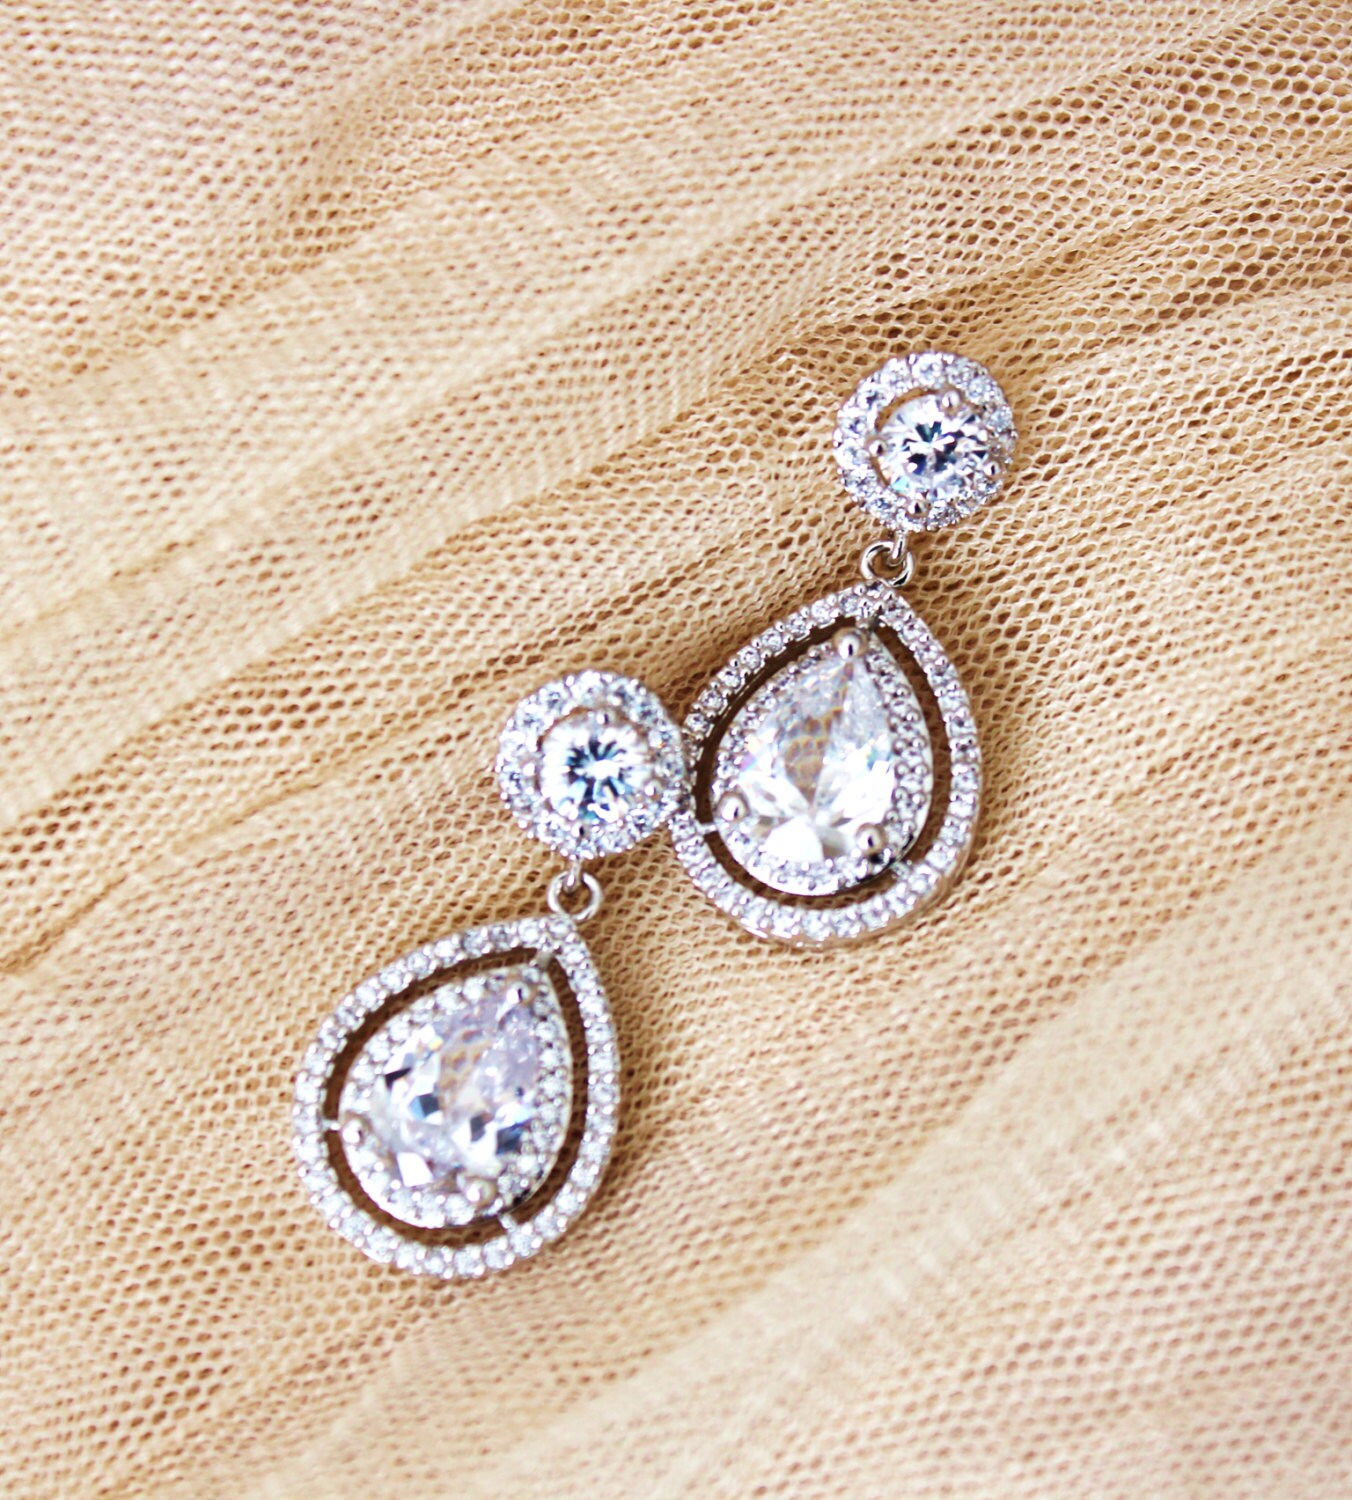 Bridal Earrings Wedding Jewelry Crystal Wedding Earrings Silver Round Halo Earrings Cubic Zirconia Dangle Drop Earrings Bridal Jewelry